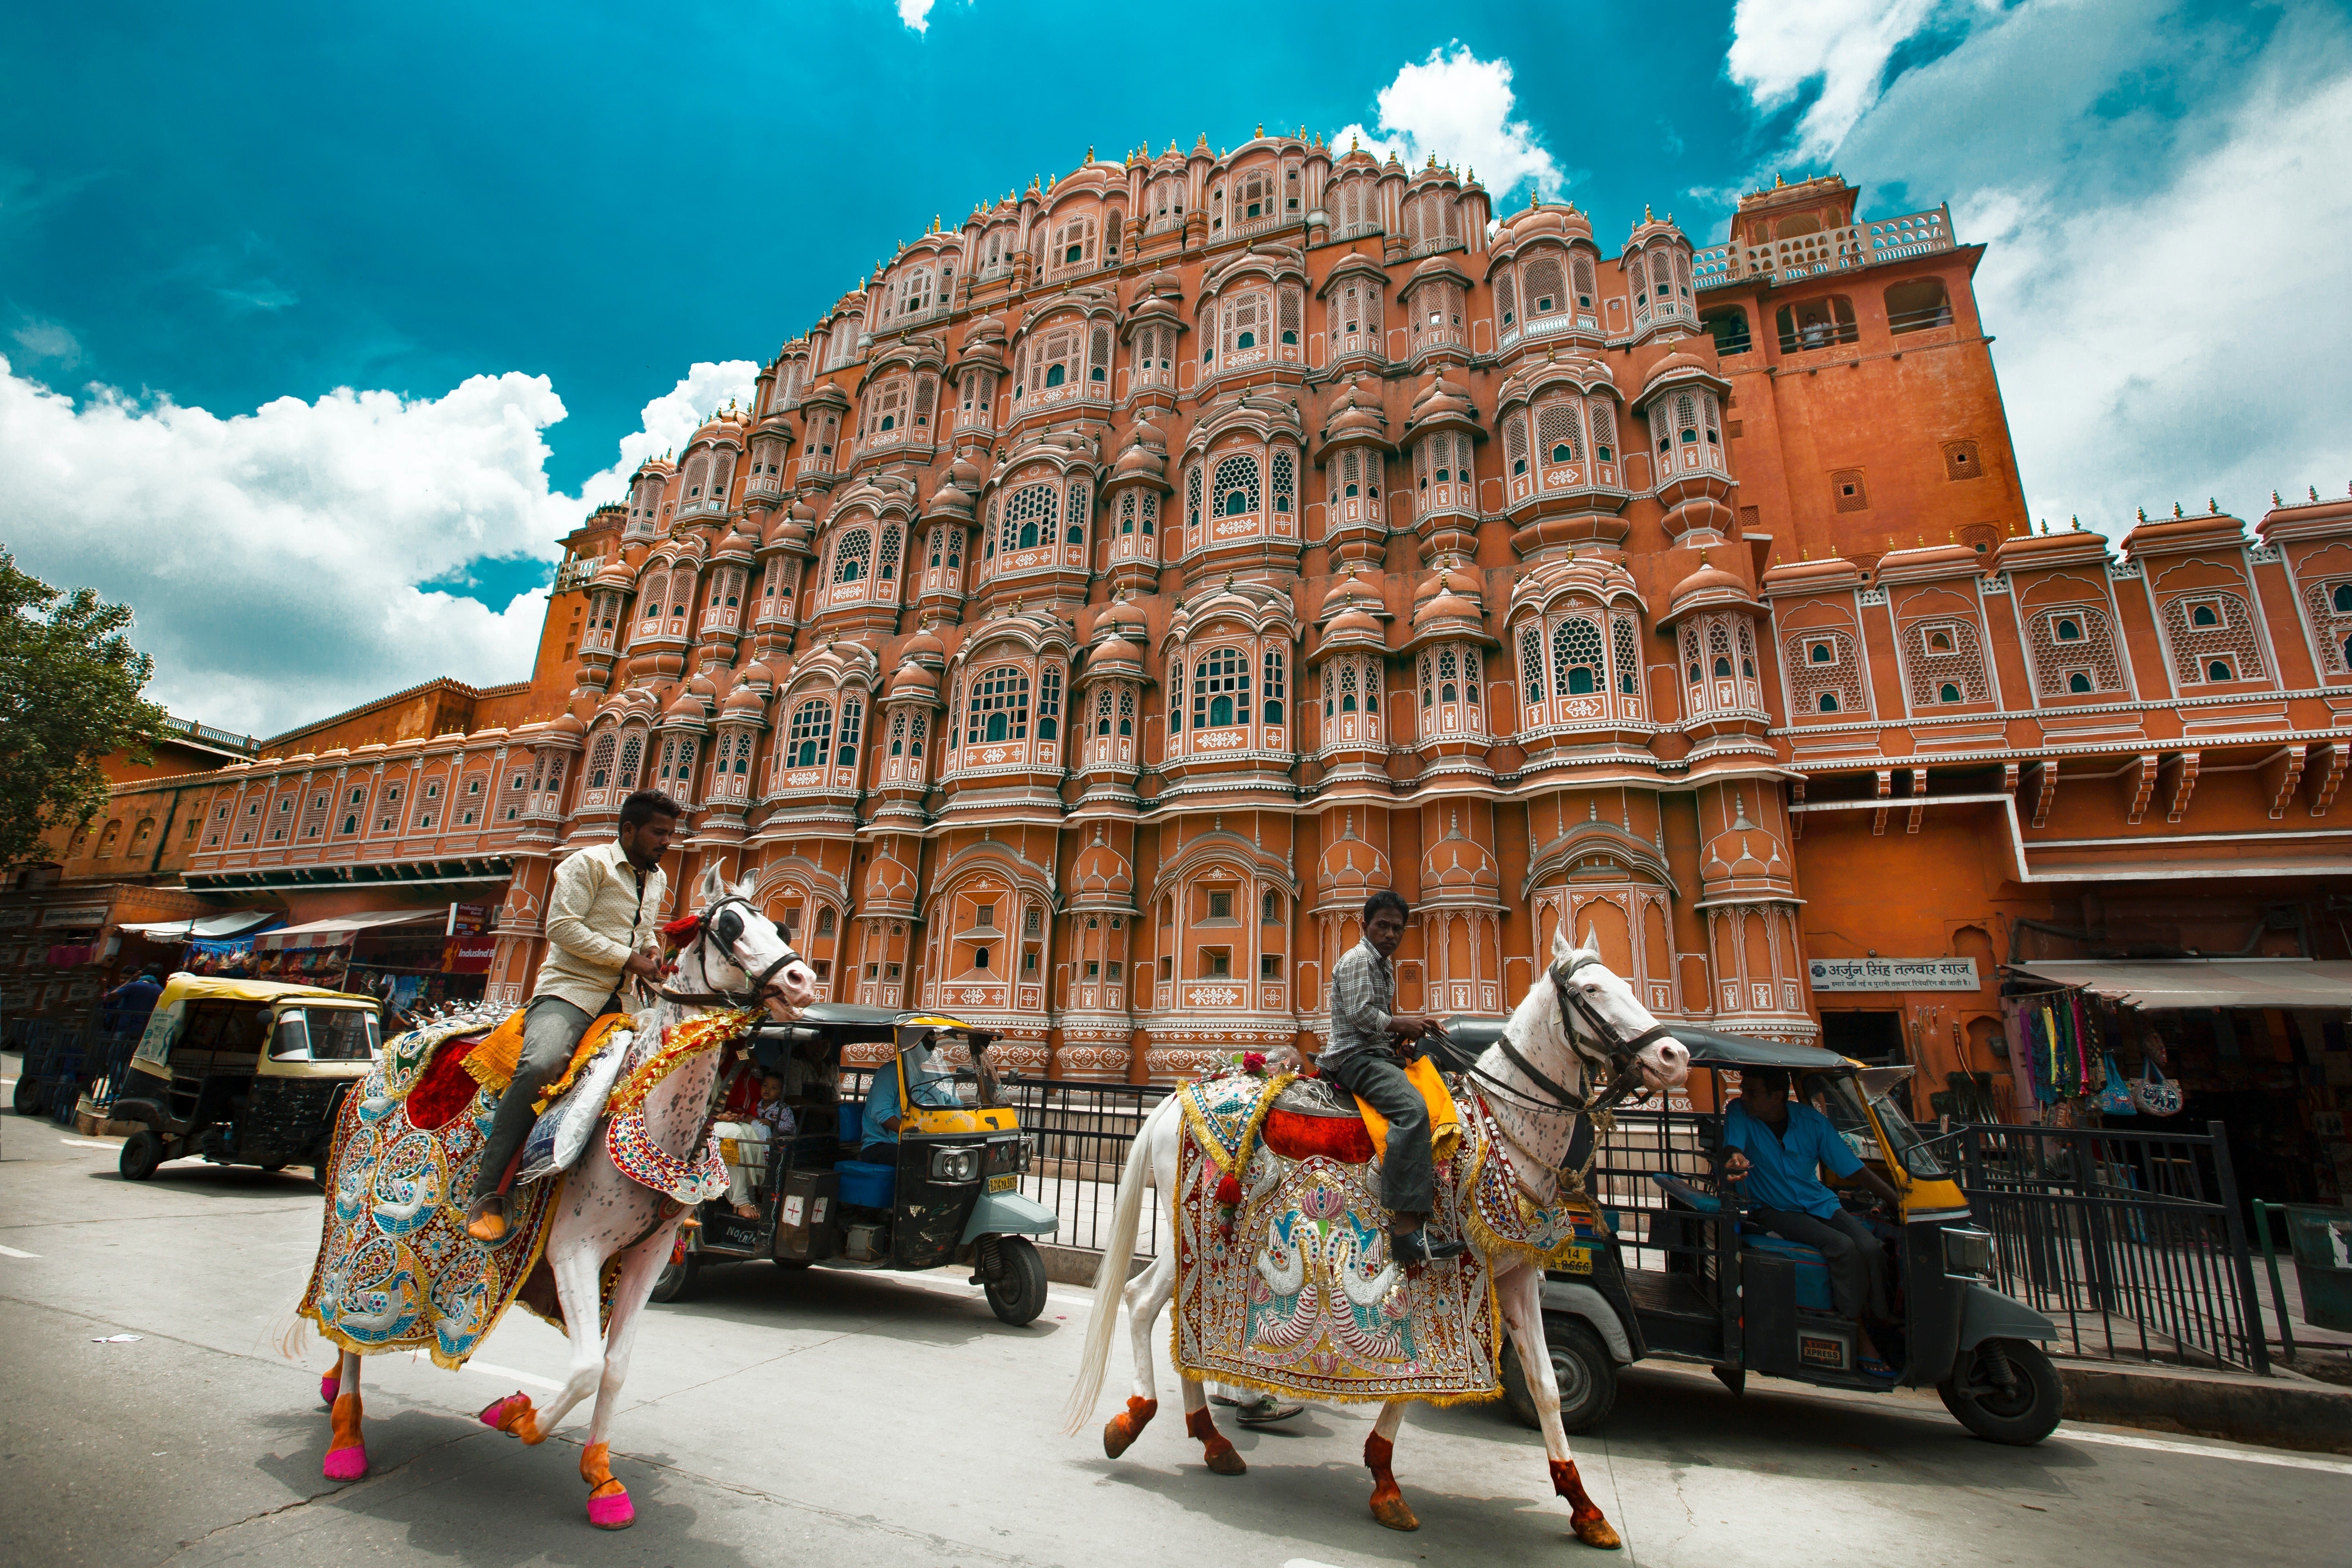 Jaipur city, image by Aditya Siva